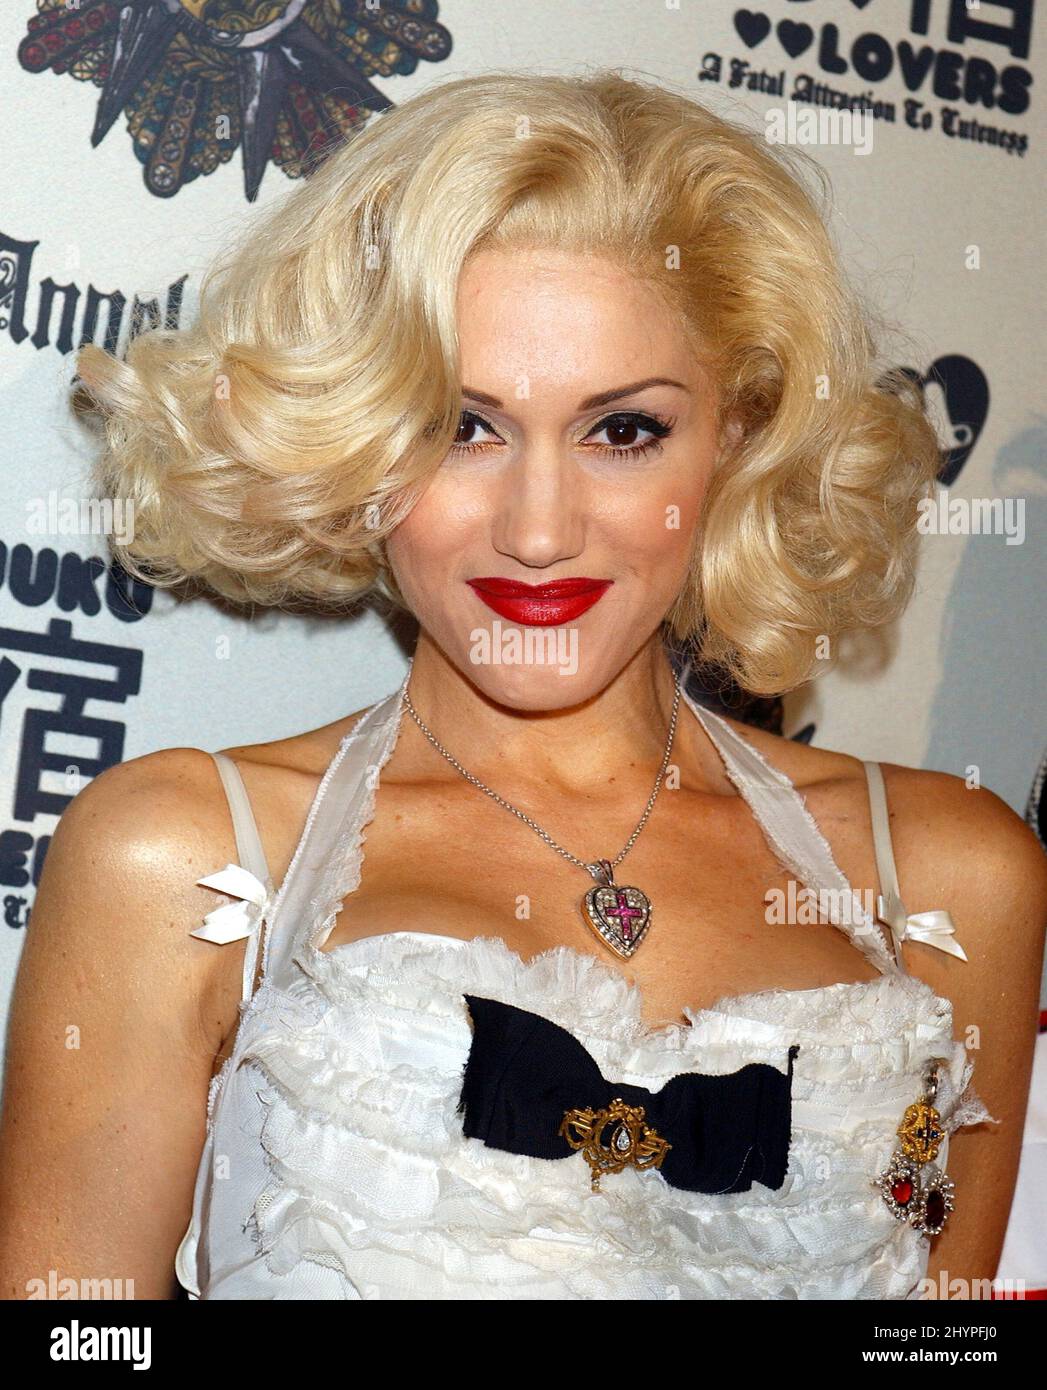 Gwen Stefani visualizza in anteprima la linea di abbigliamento 'Harajuku Lovers' al Museo di Hollywood. Foto: UK Stampa Foto Stock